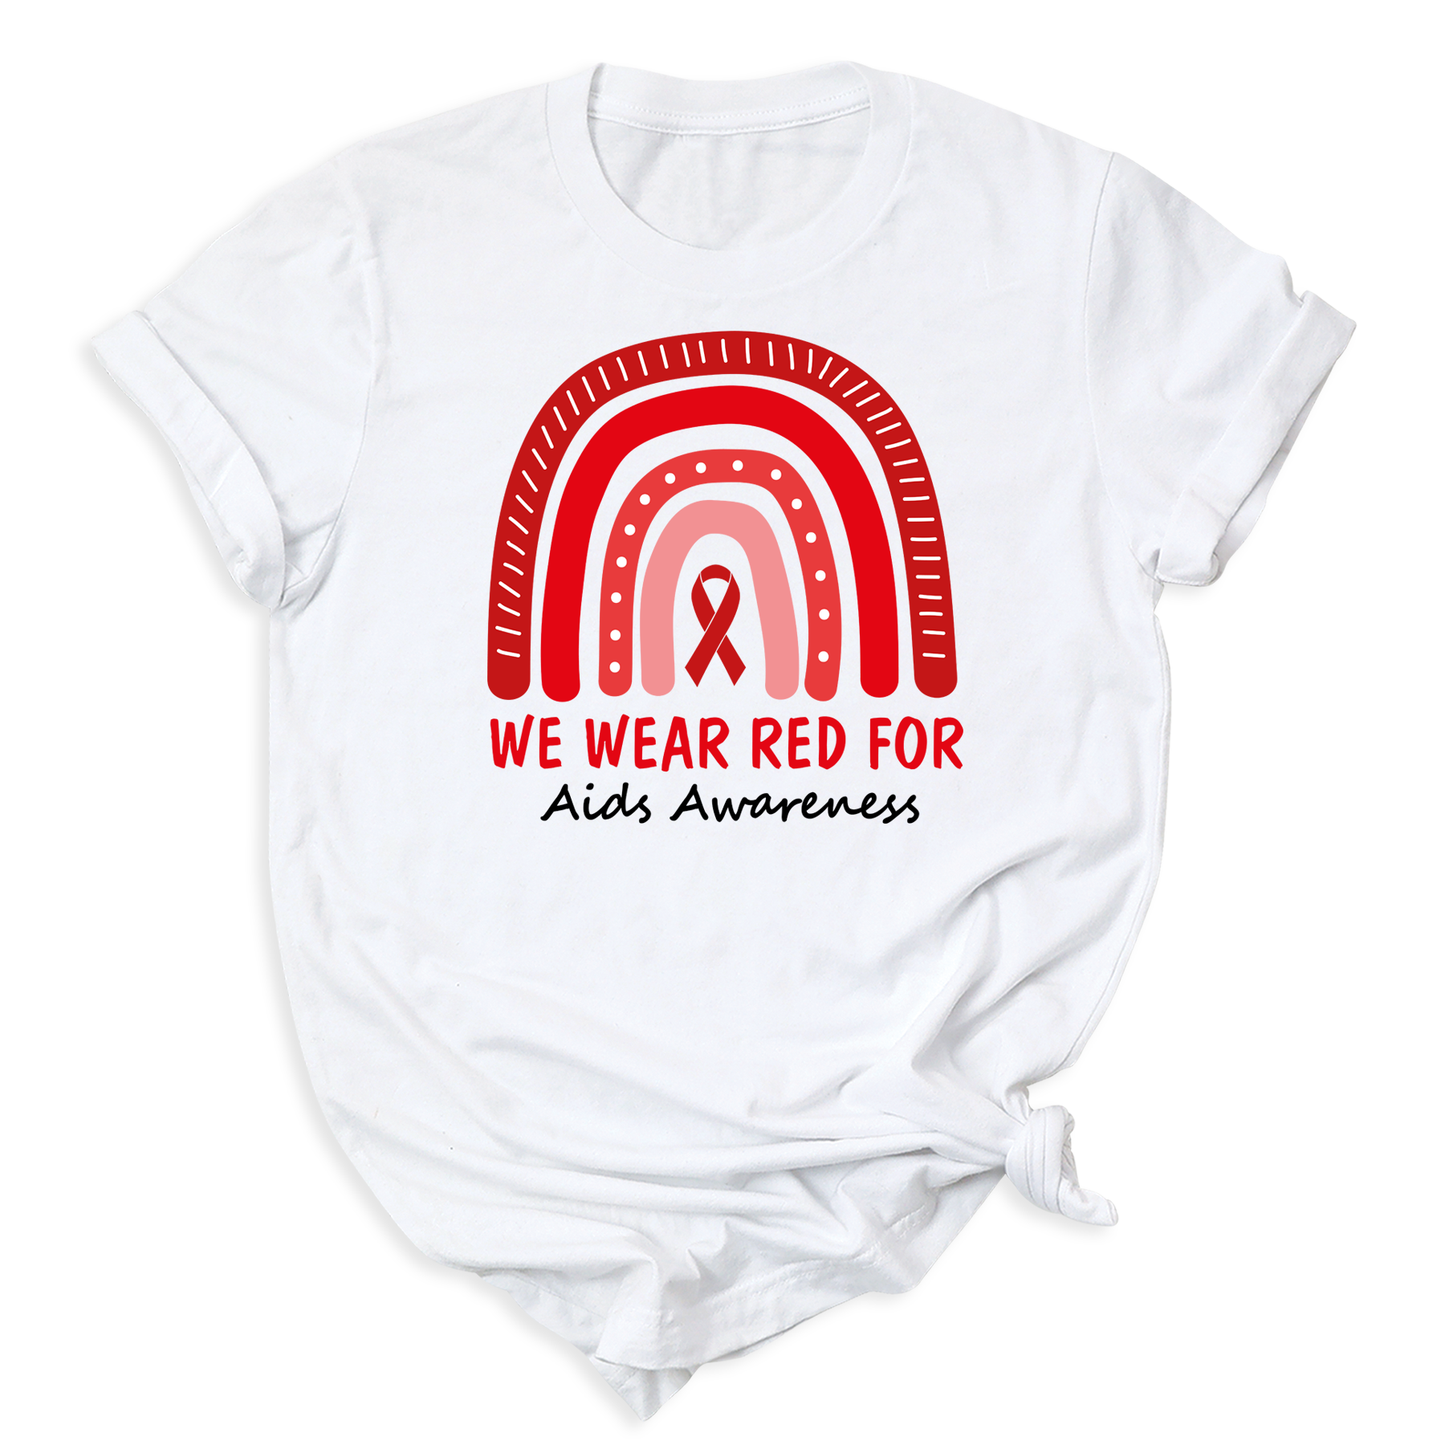 AIDS Awareness T-Shirts